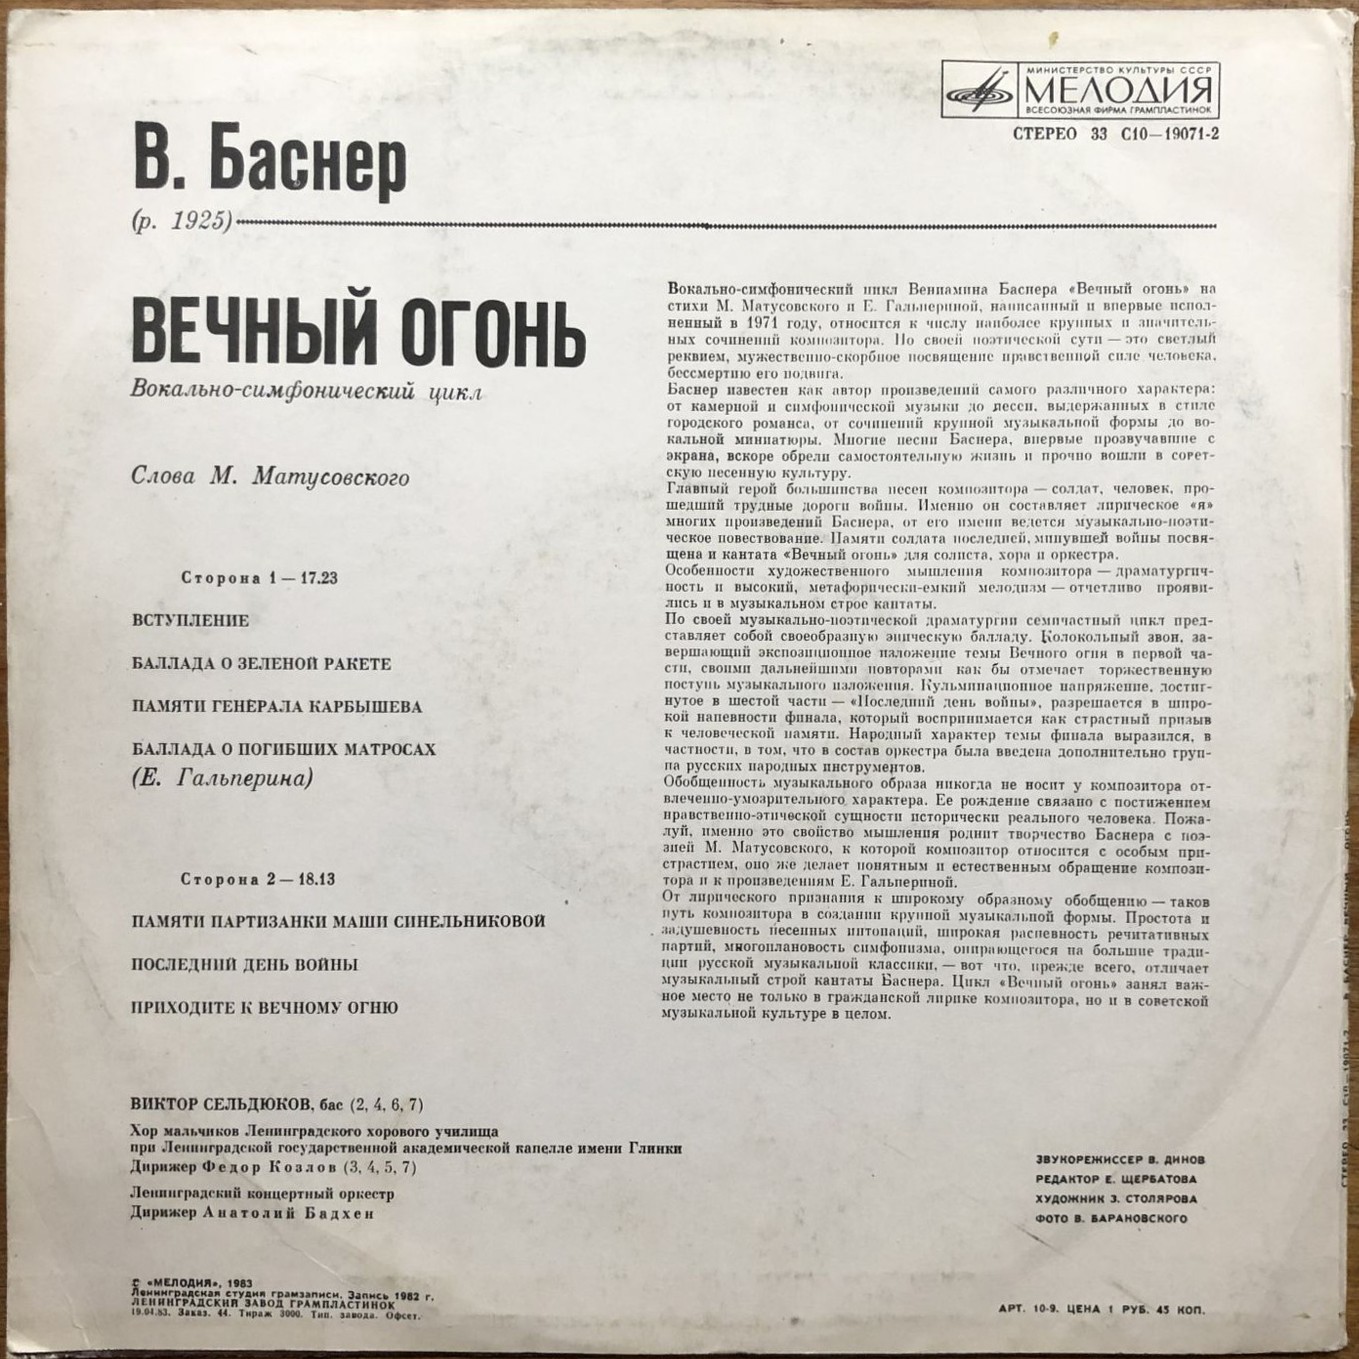 В. БАСНЕР (1925): «Вечный огонь», вокально-симфонический цикл, сл. М. Матусовского и Е. Гальпериной.